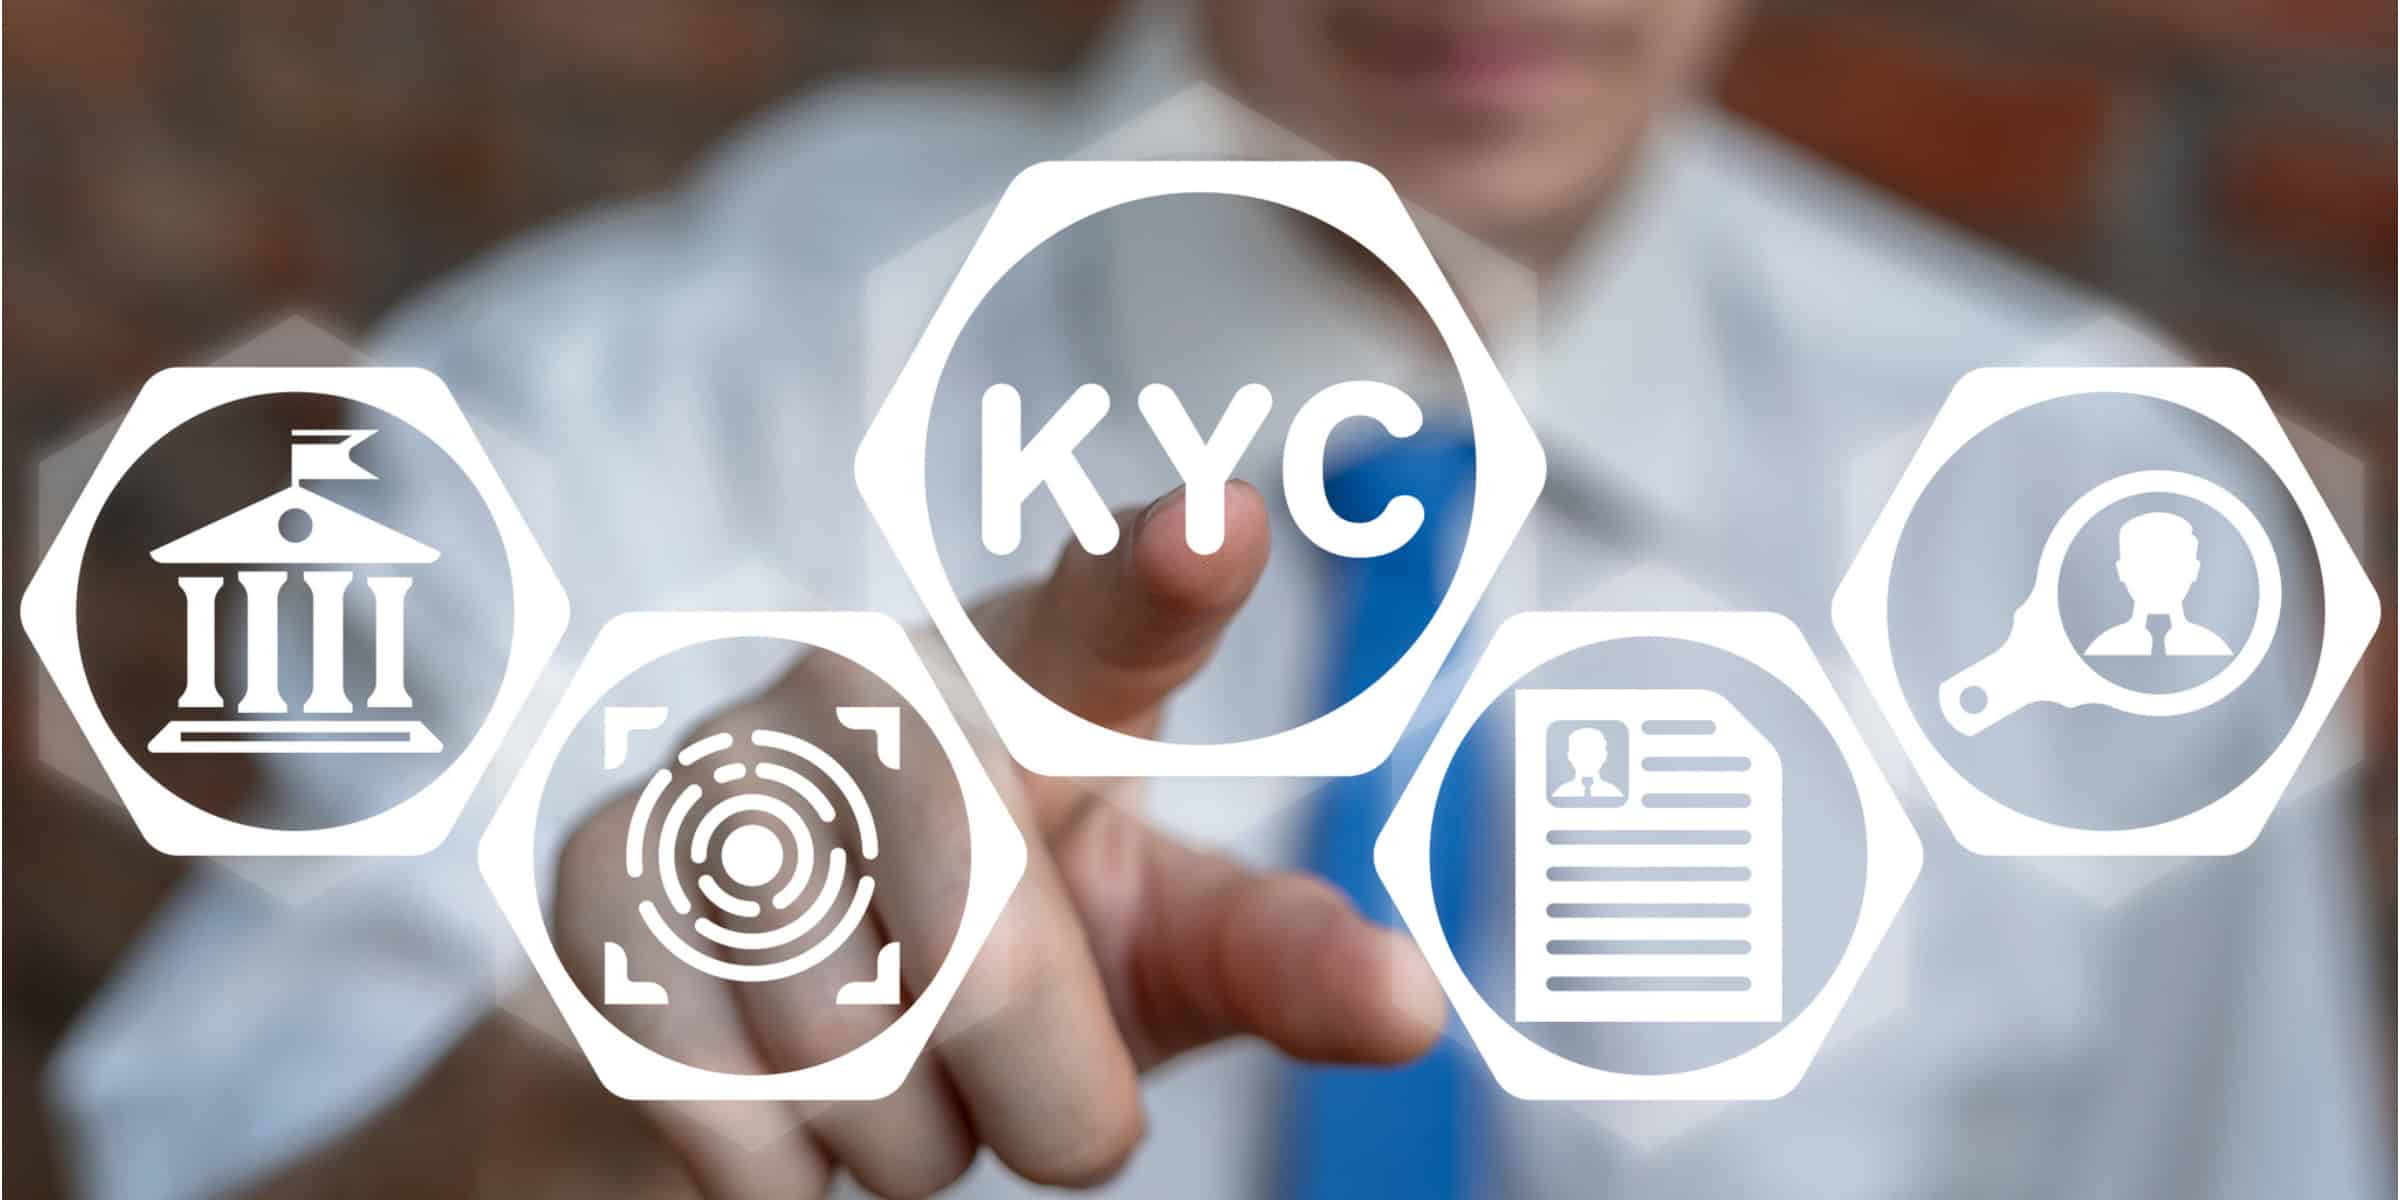 e-KYC market